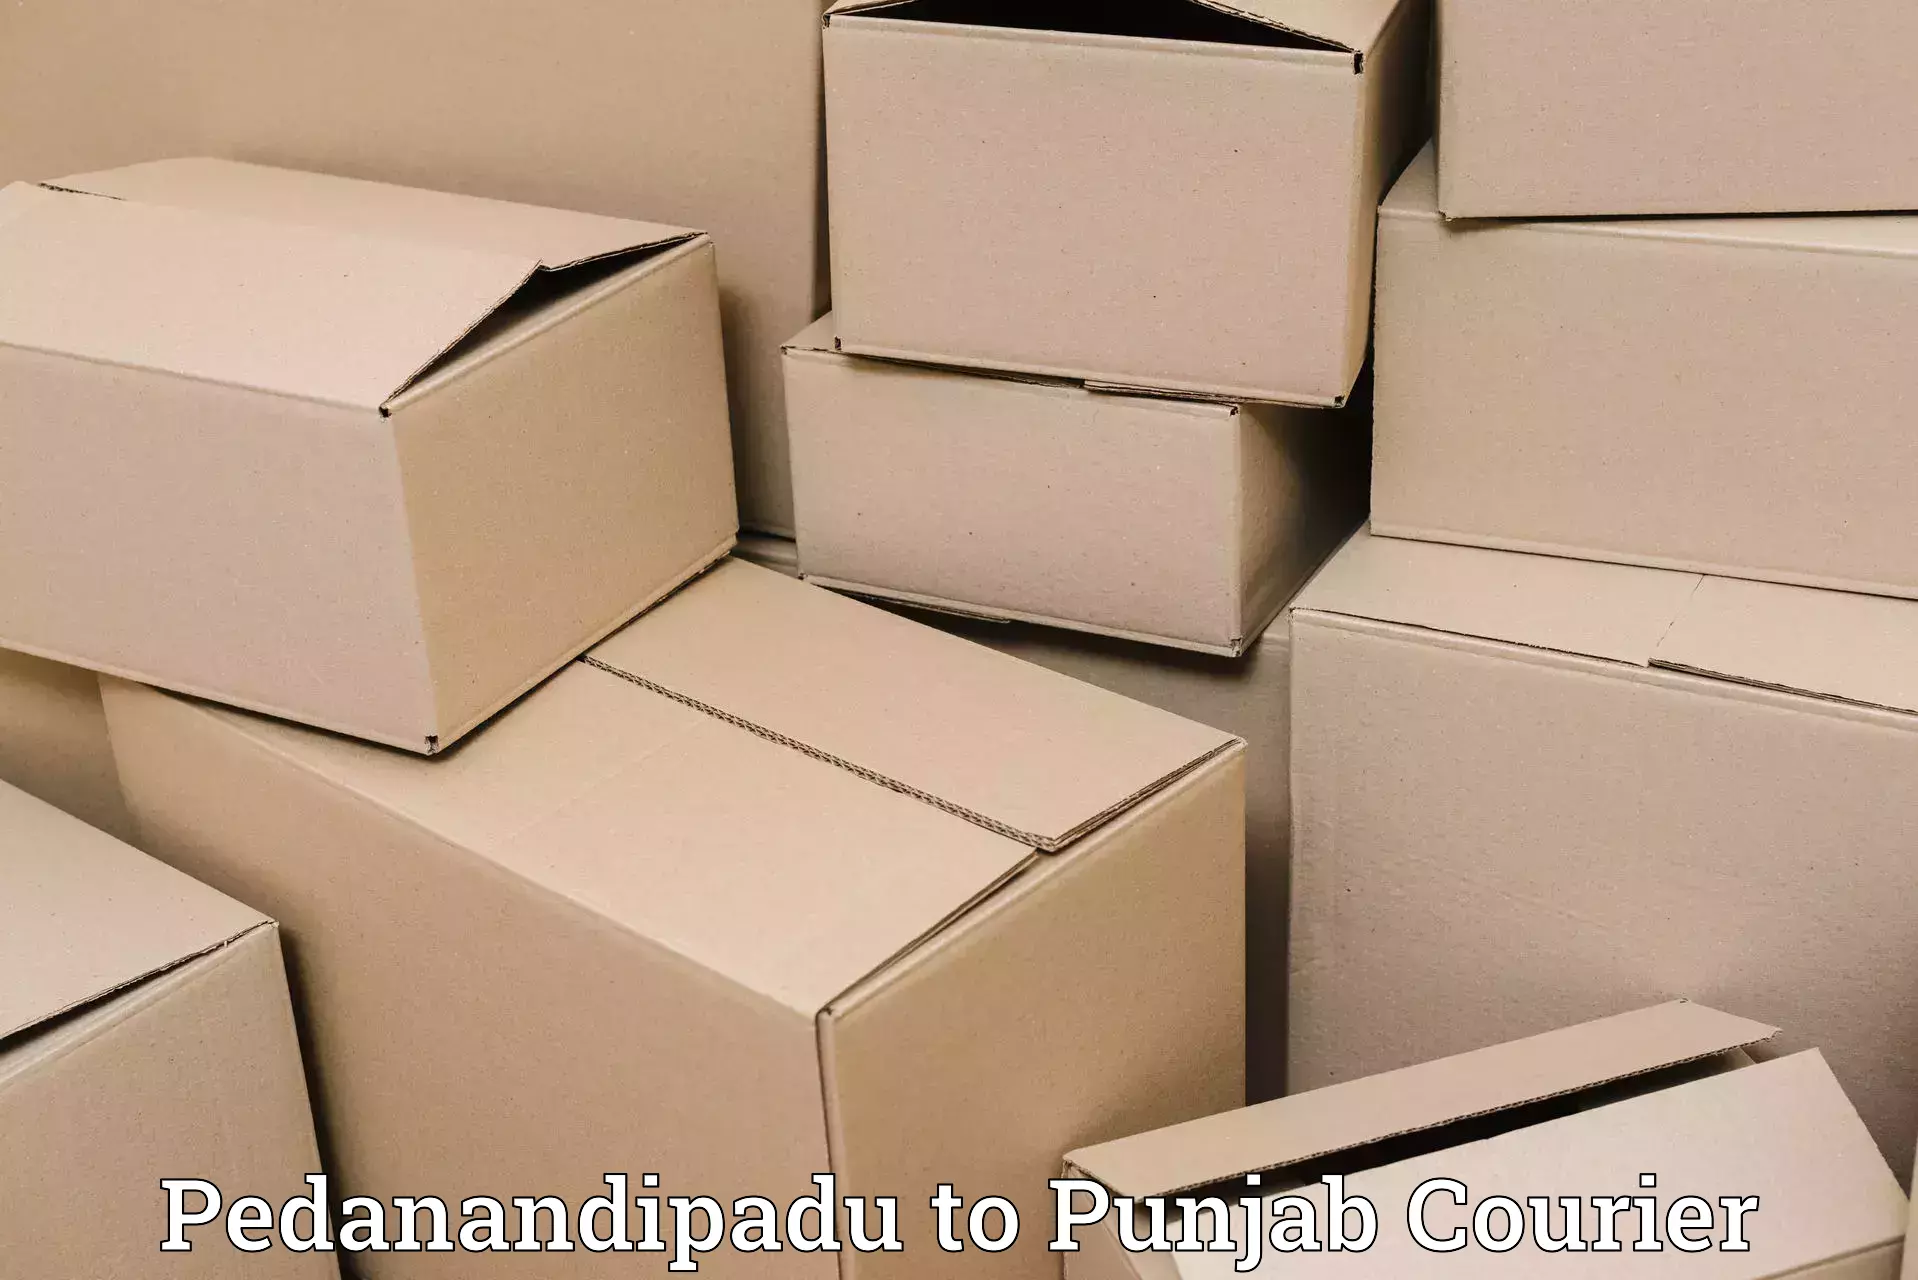 Customized delivery options Pedanandipadu to Bathinda